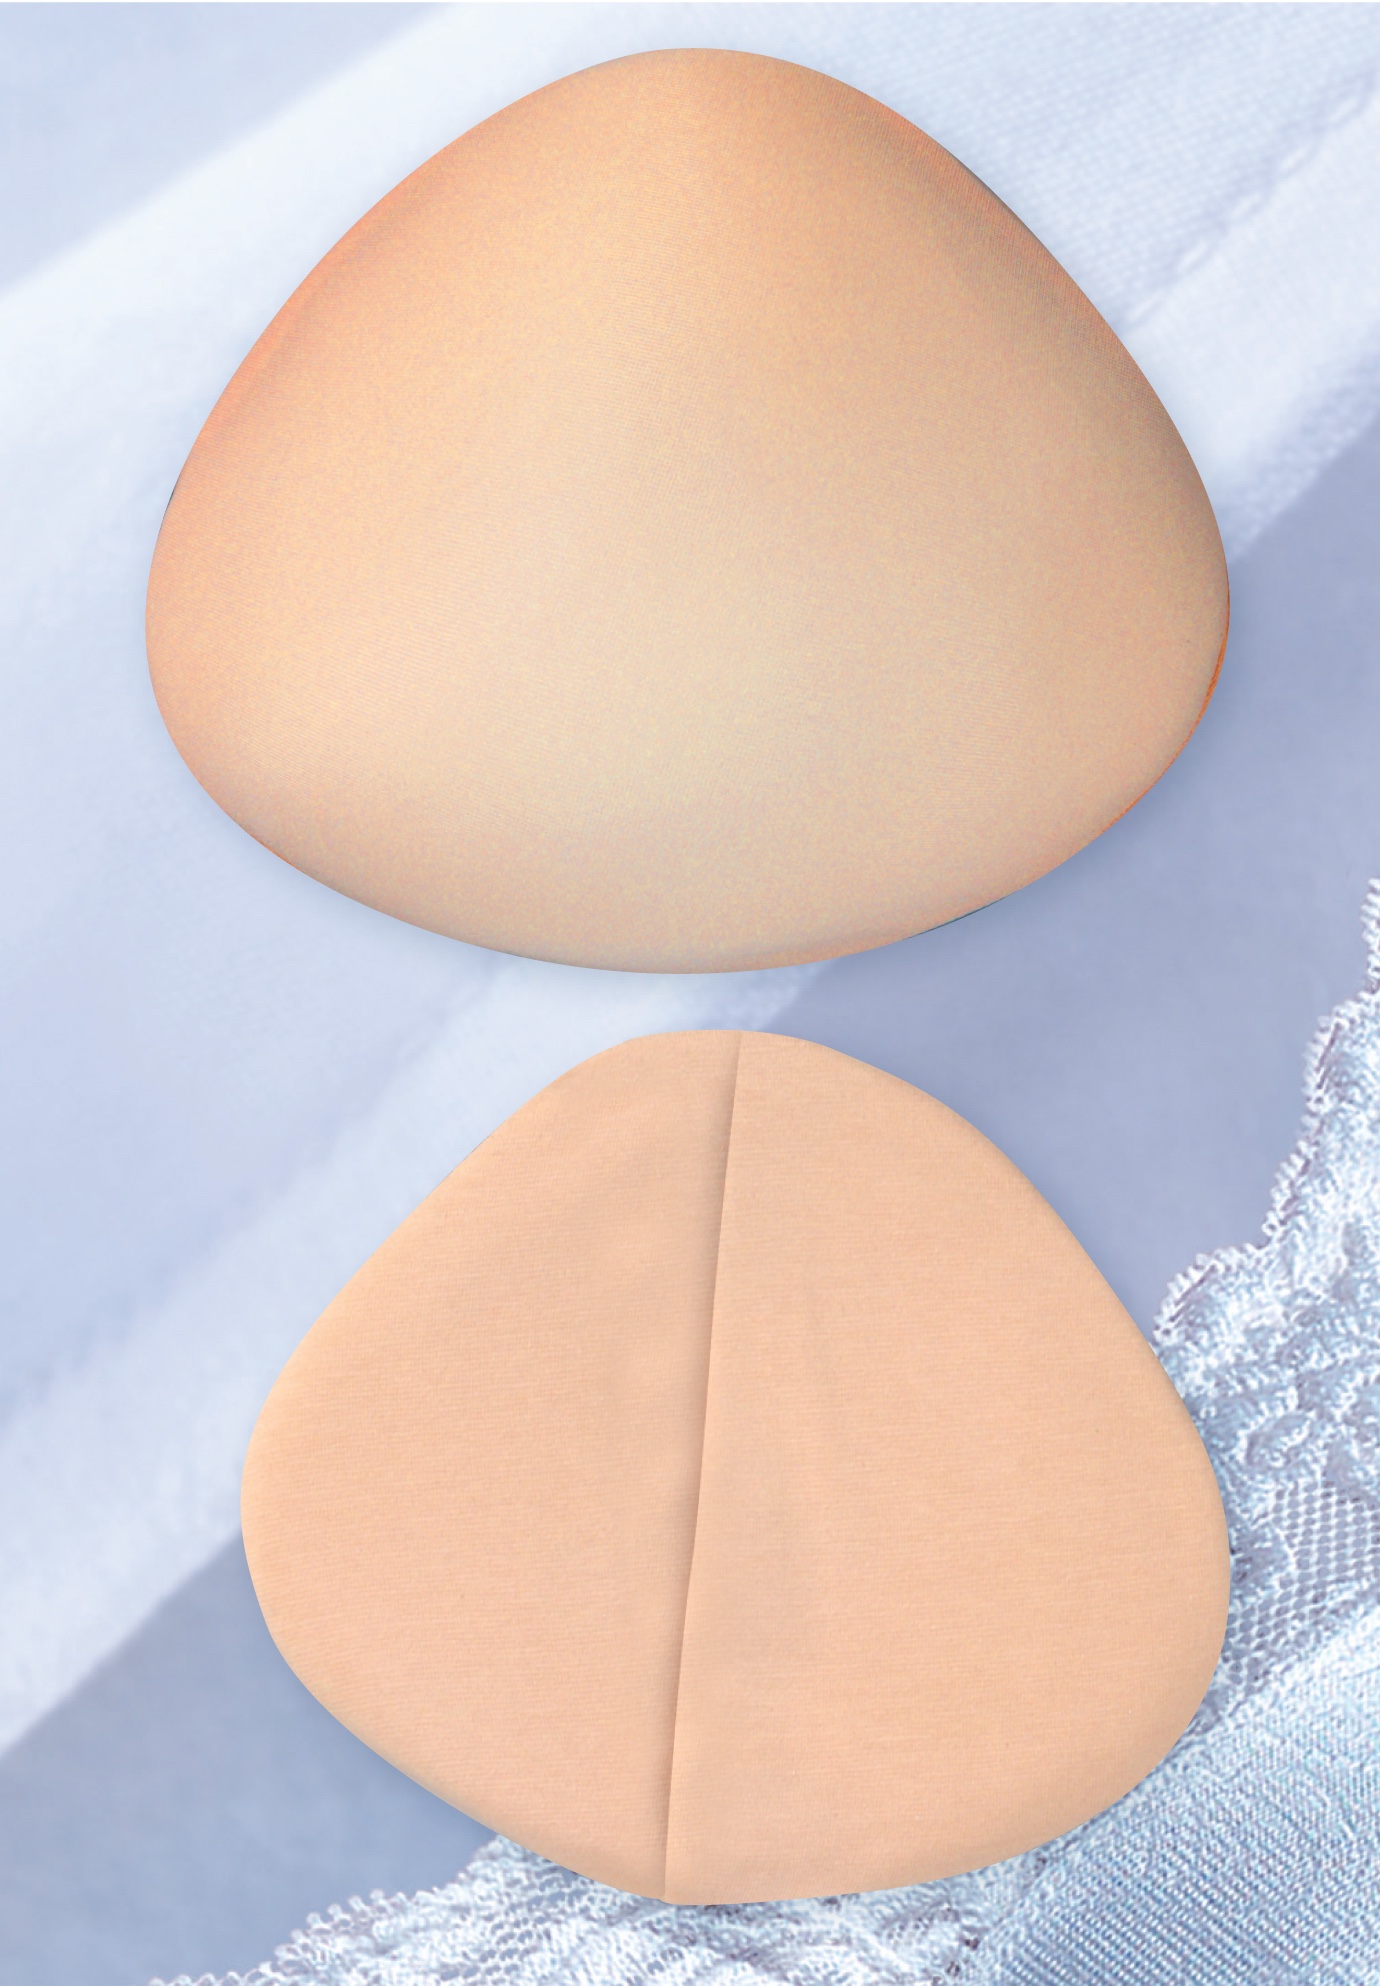 How To Wear Teardrop Breast Forms